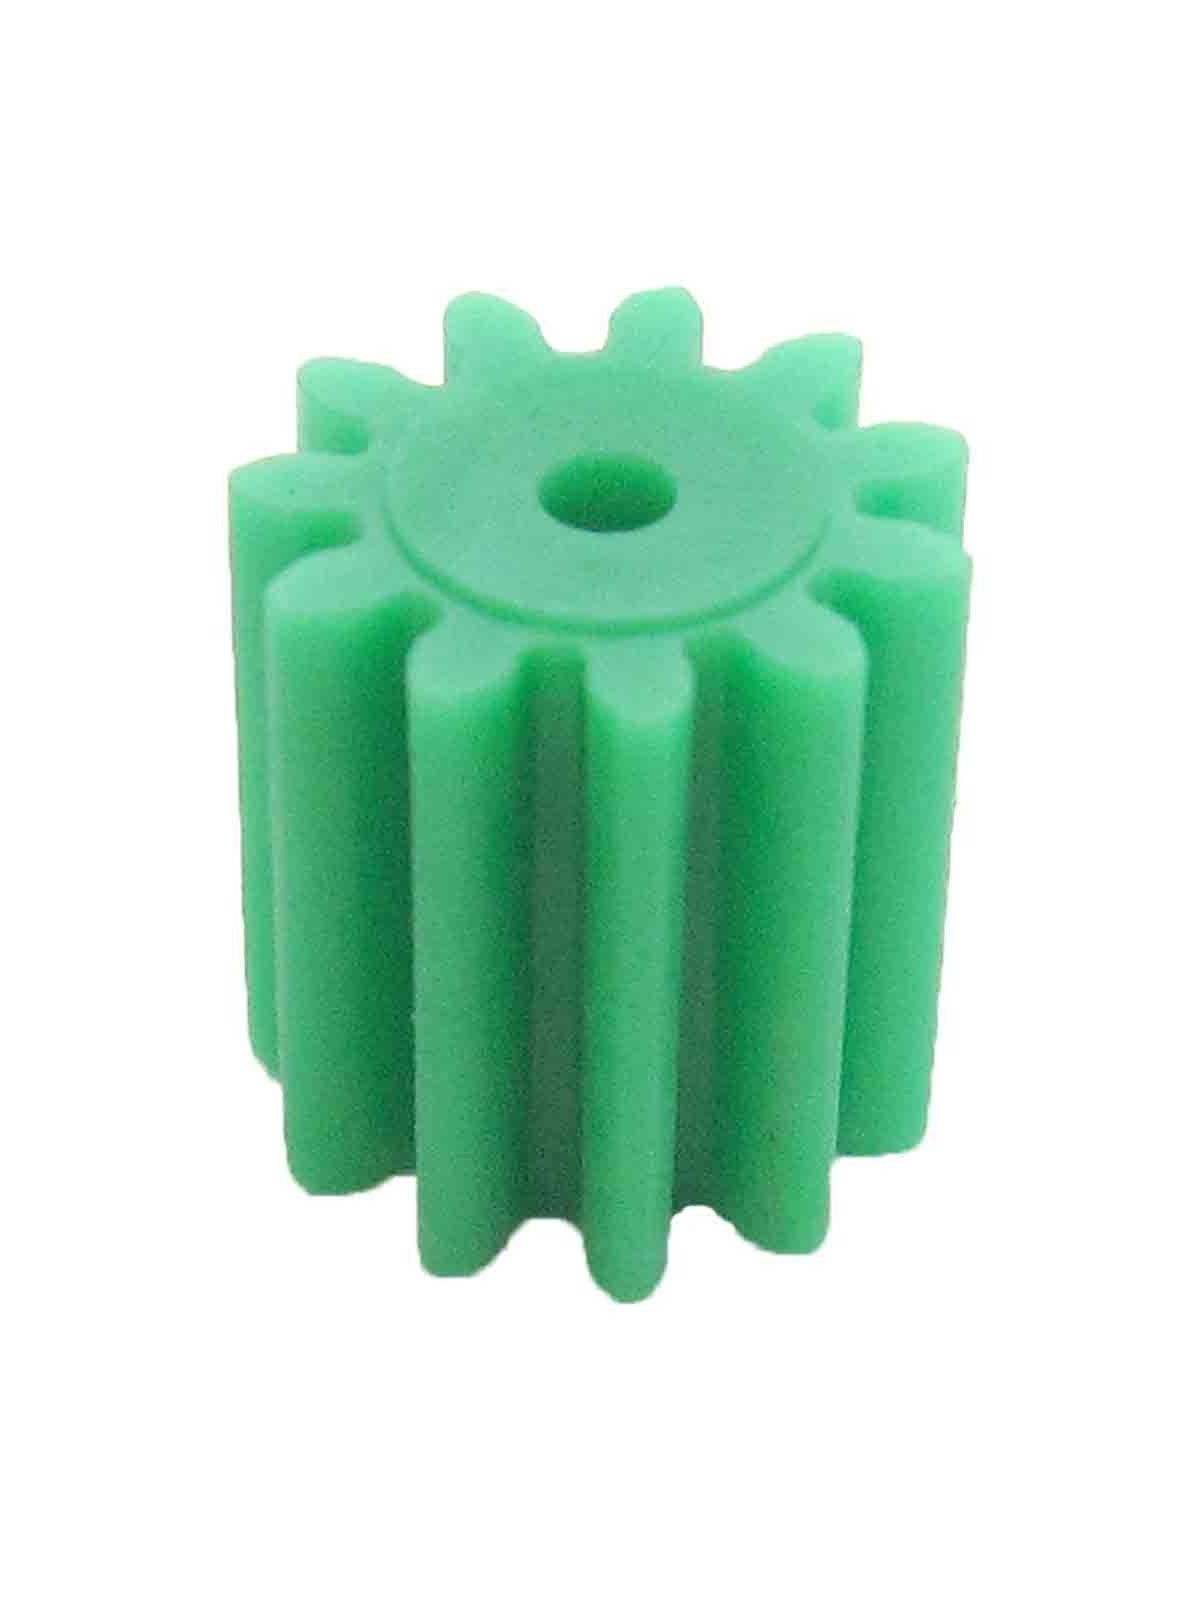 Piñón de plástico 11 dientes, eje 2mm, módulo 0.75 - MICROLOG